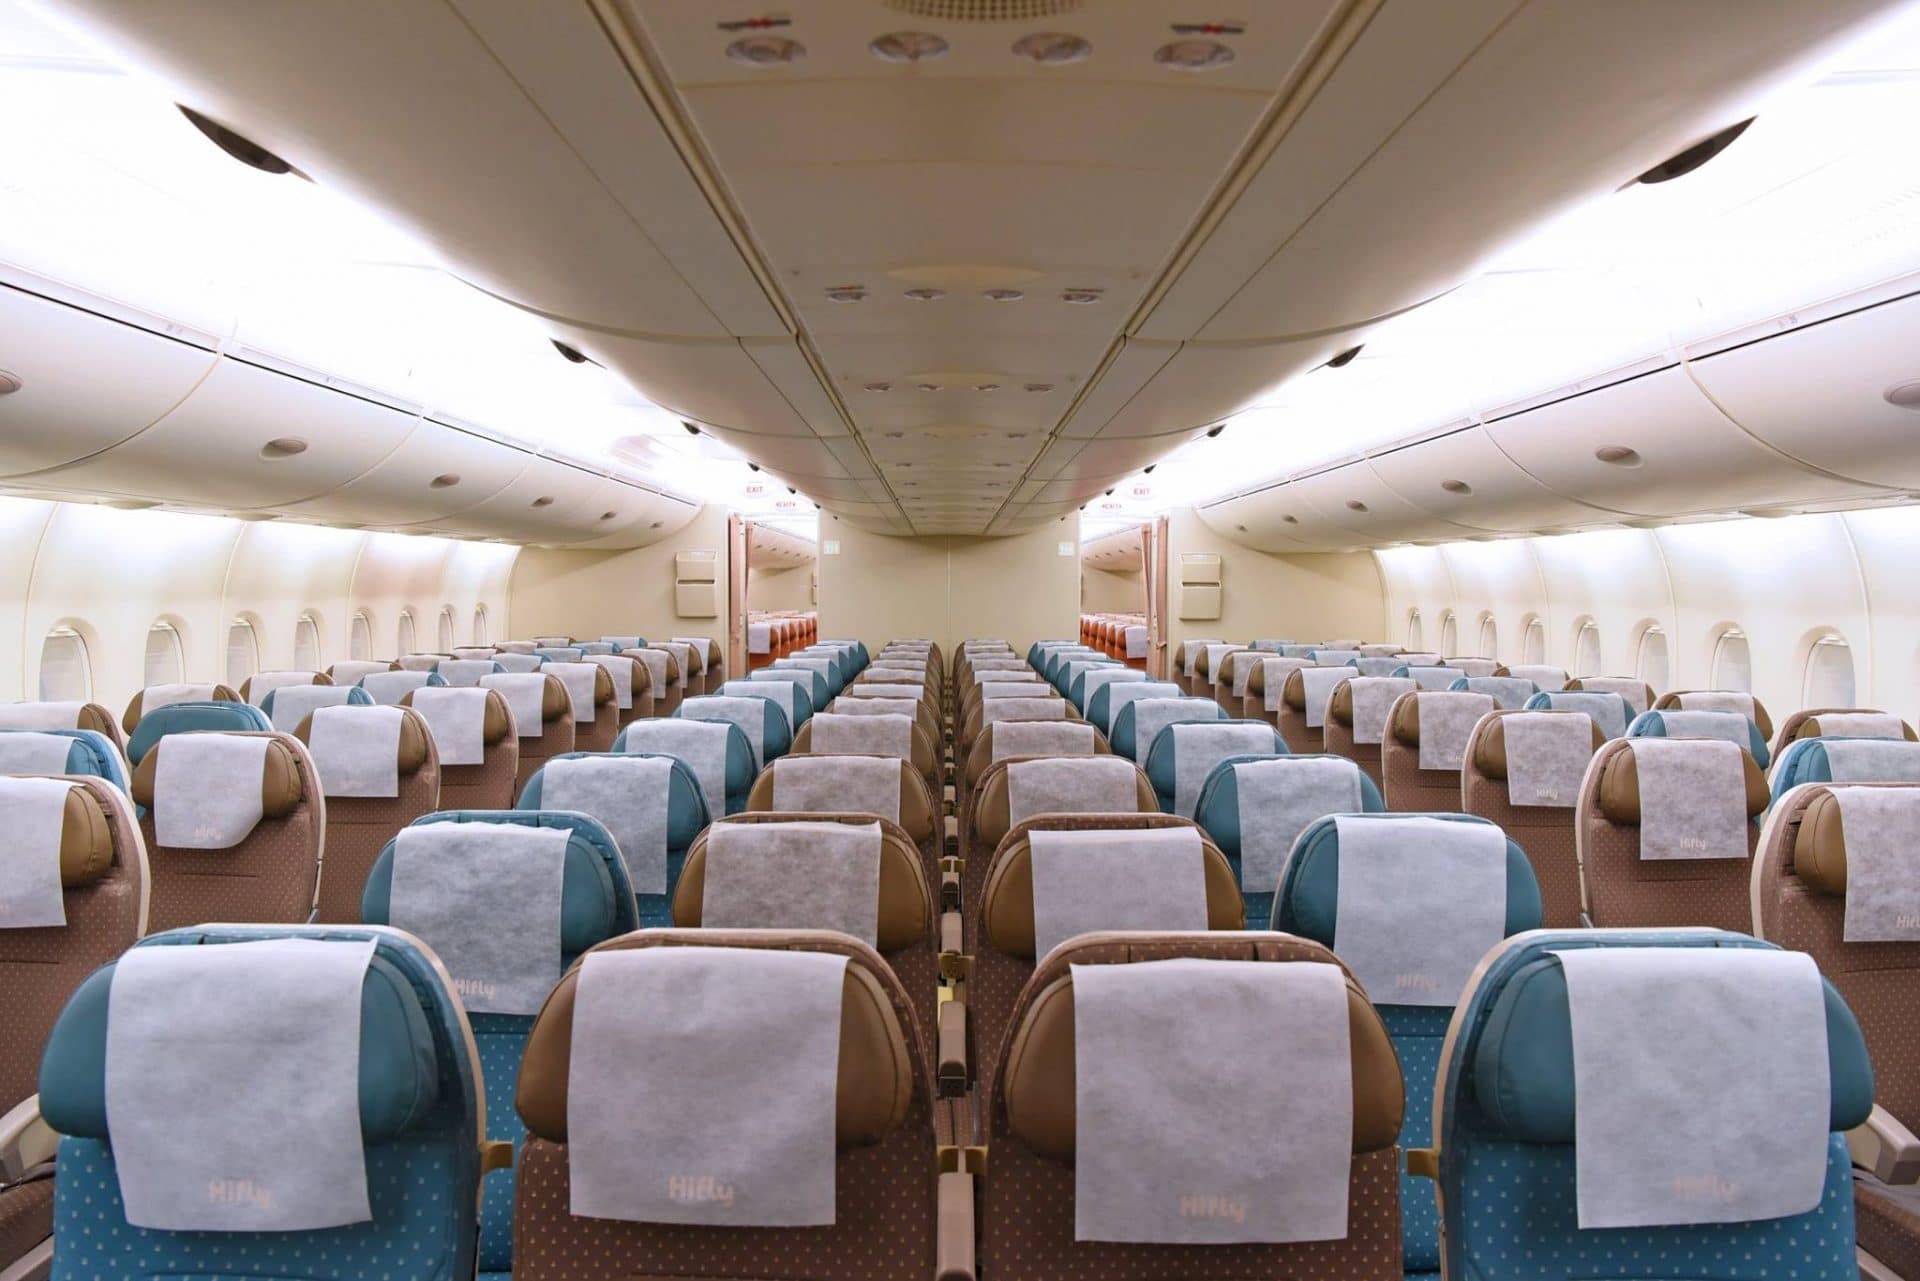 明珠经济舱_B777-300ER体验_南航机上服务 - 中国南方航空官网